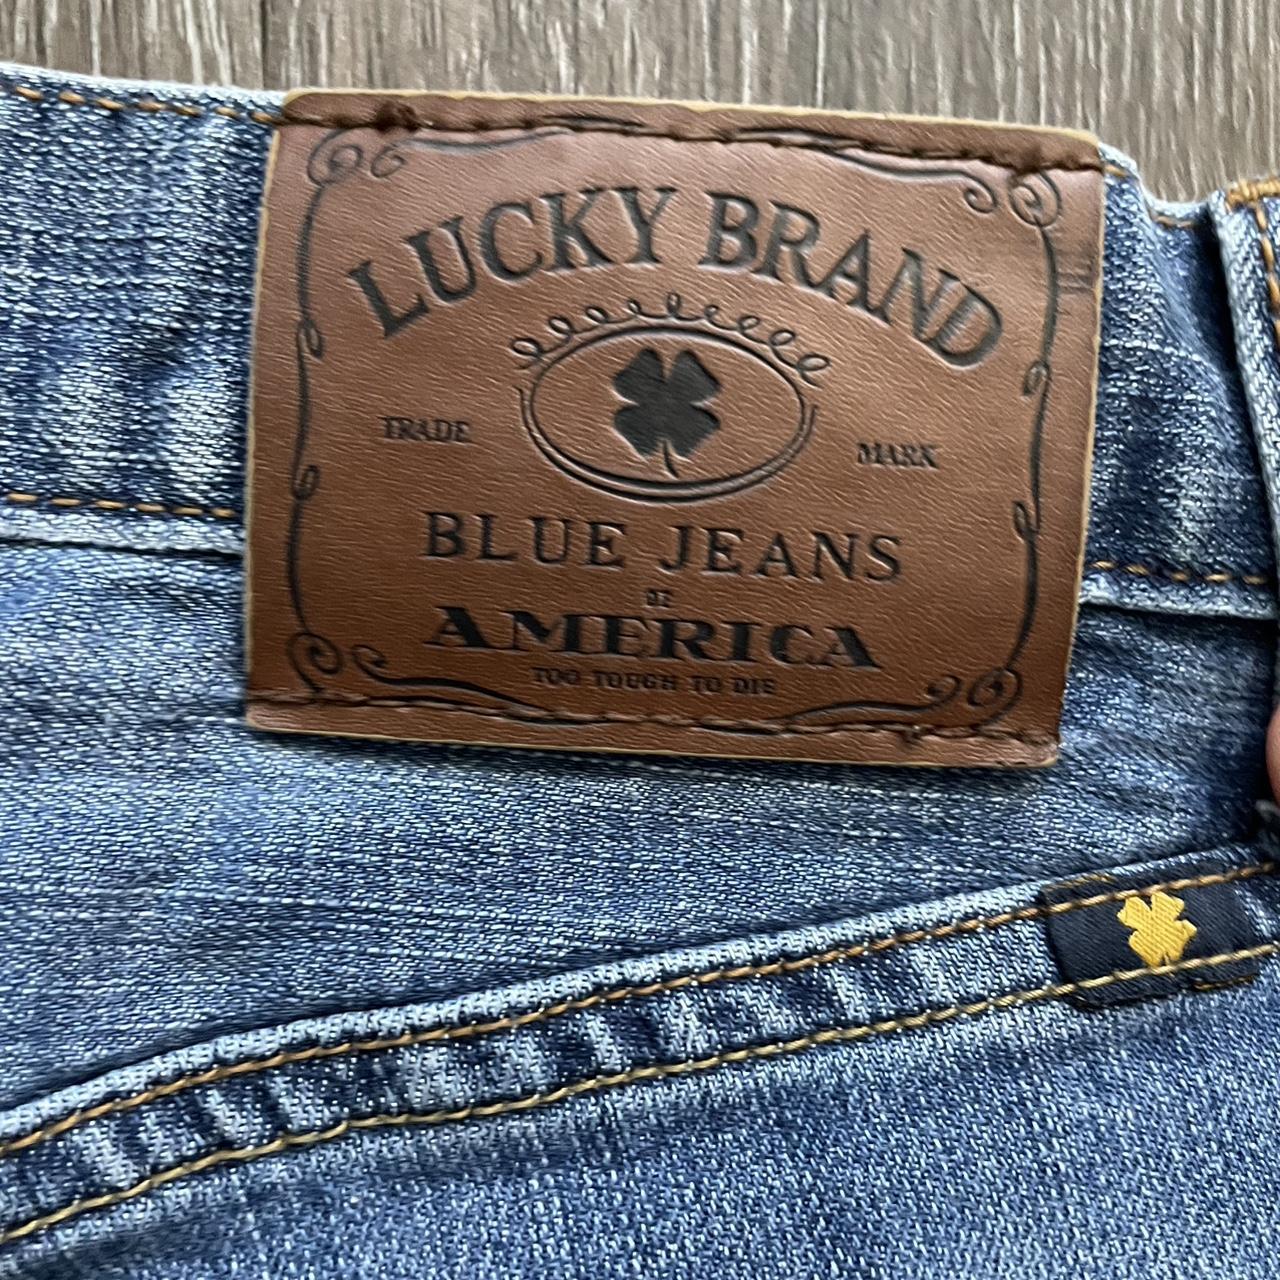 Lucky Brand Men's Blue Jeans | Depop